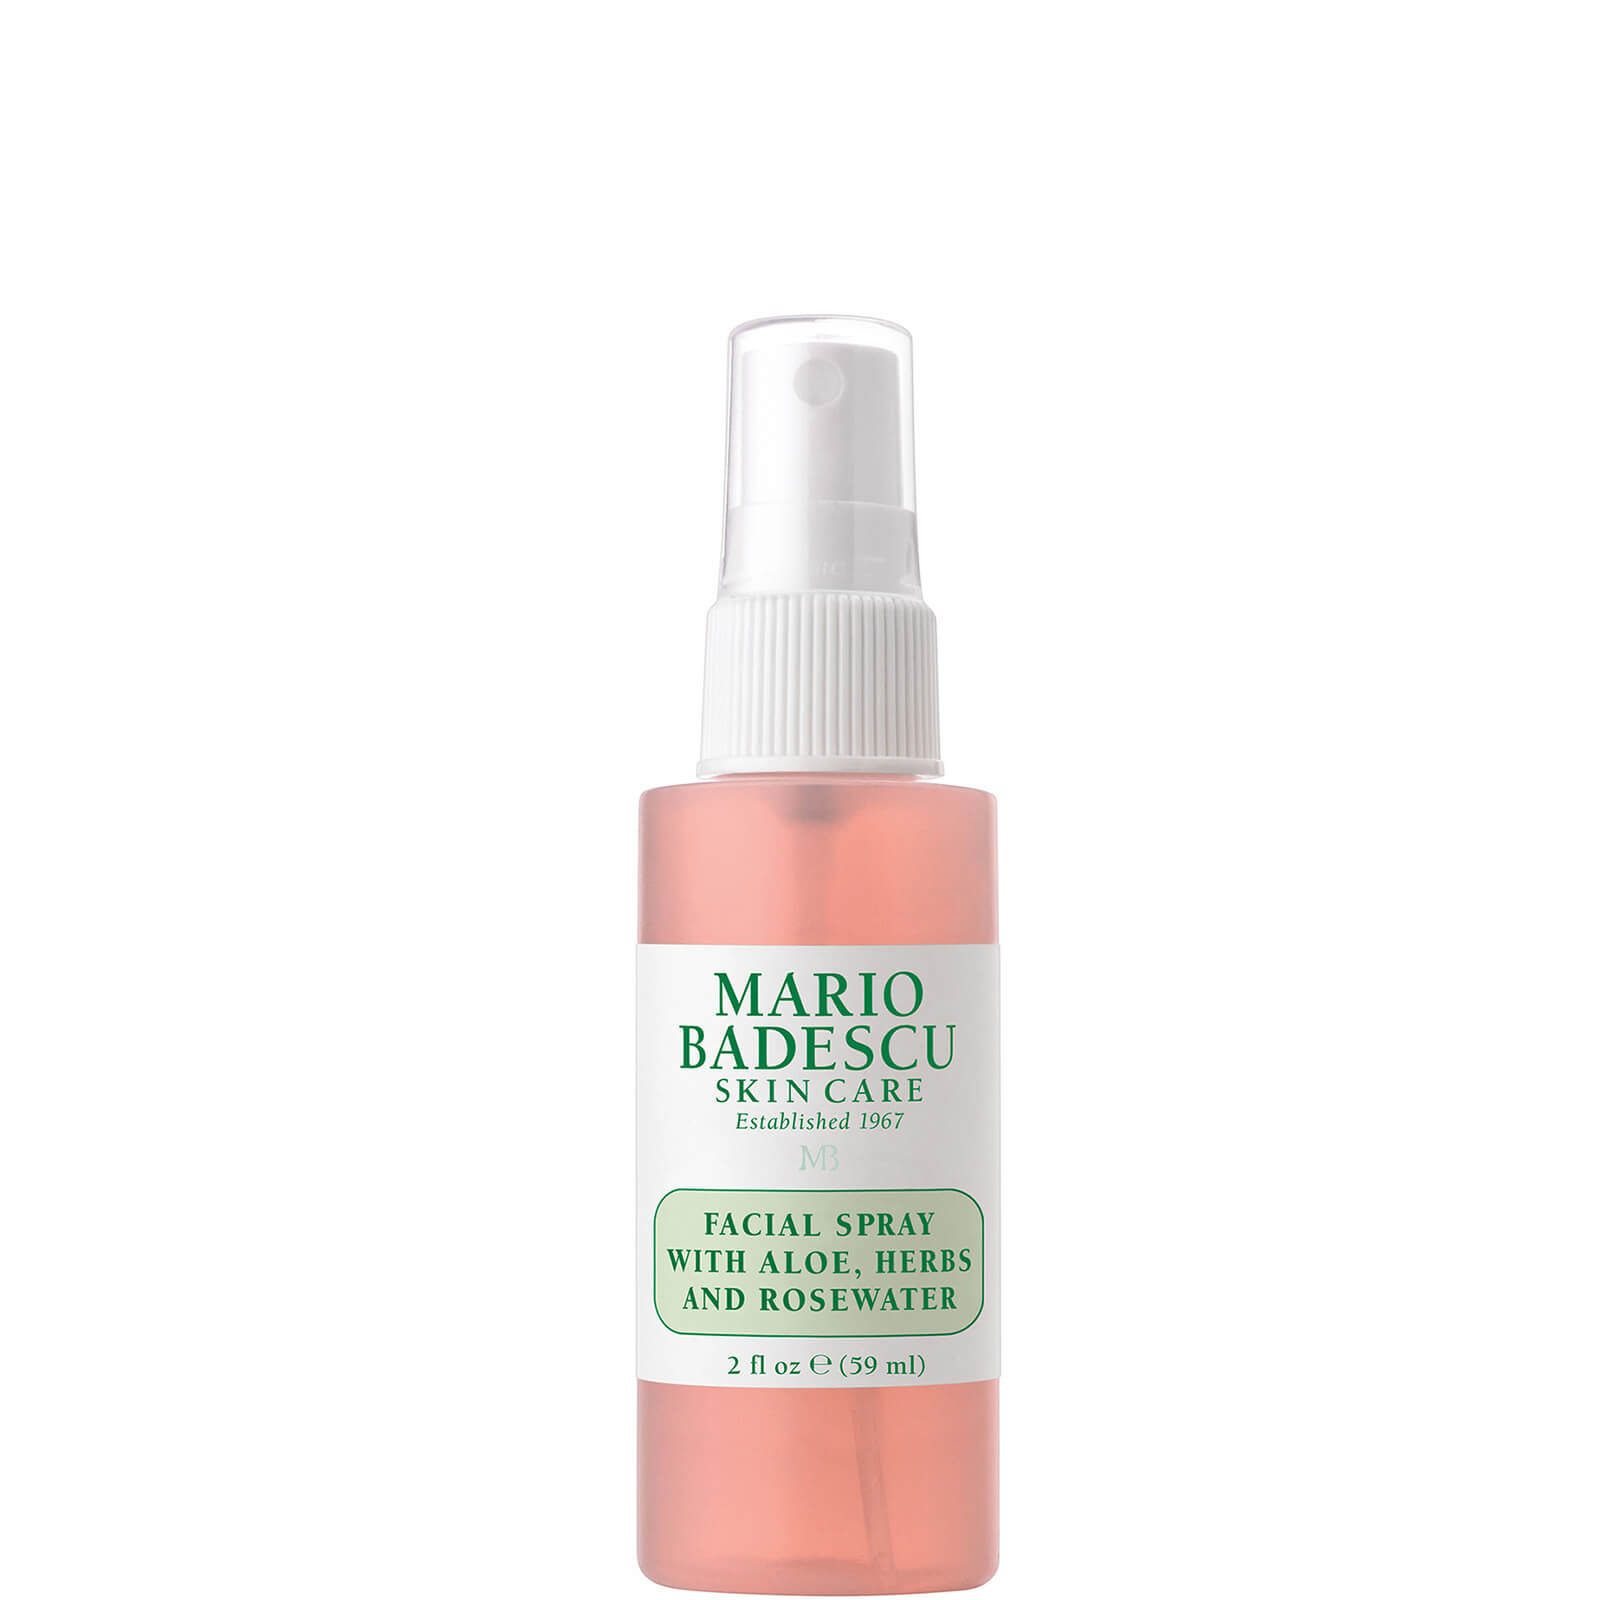 Mario Badescu Facial Spray With Aloe, Herbs And Rosewater - 59ml